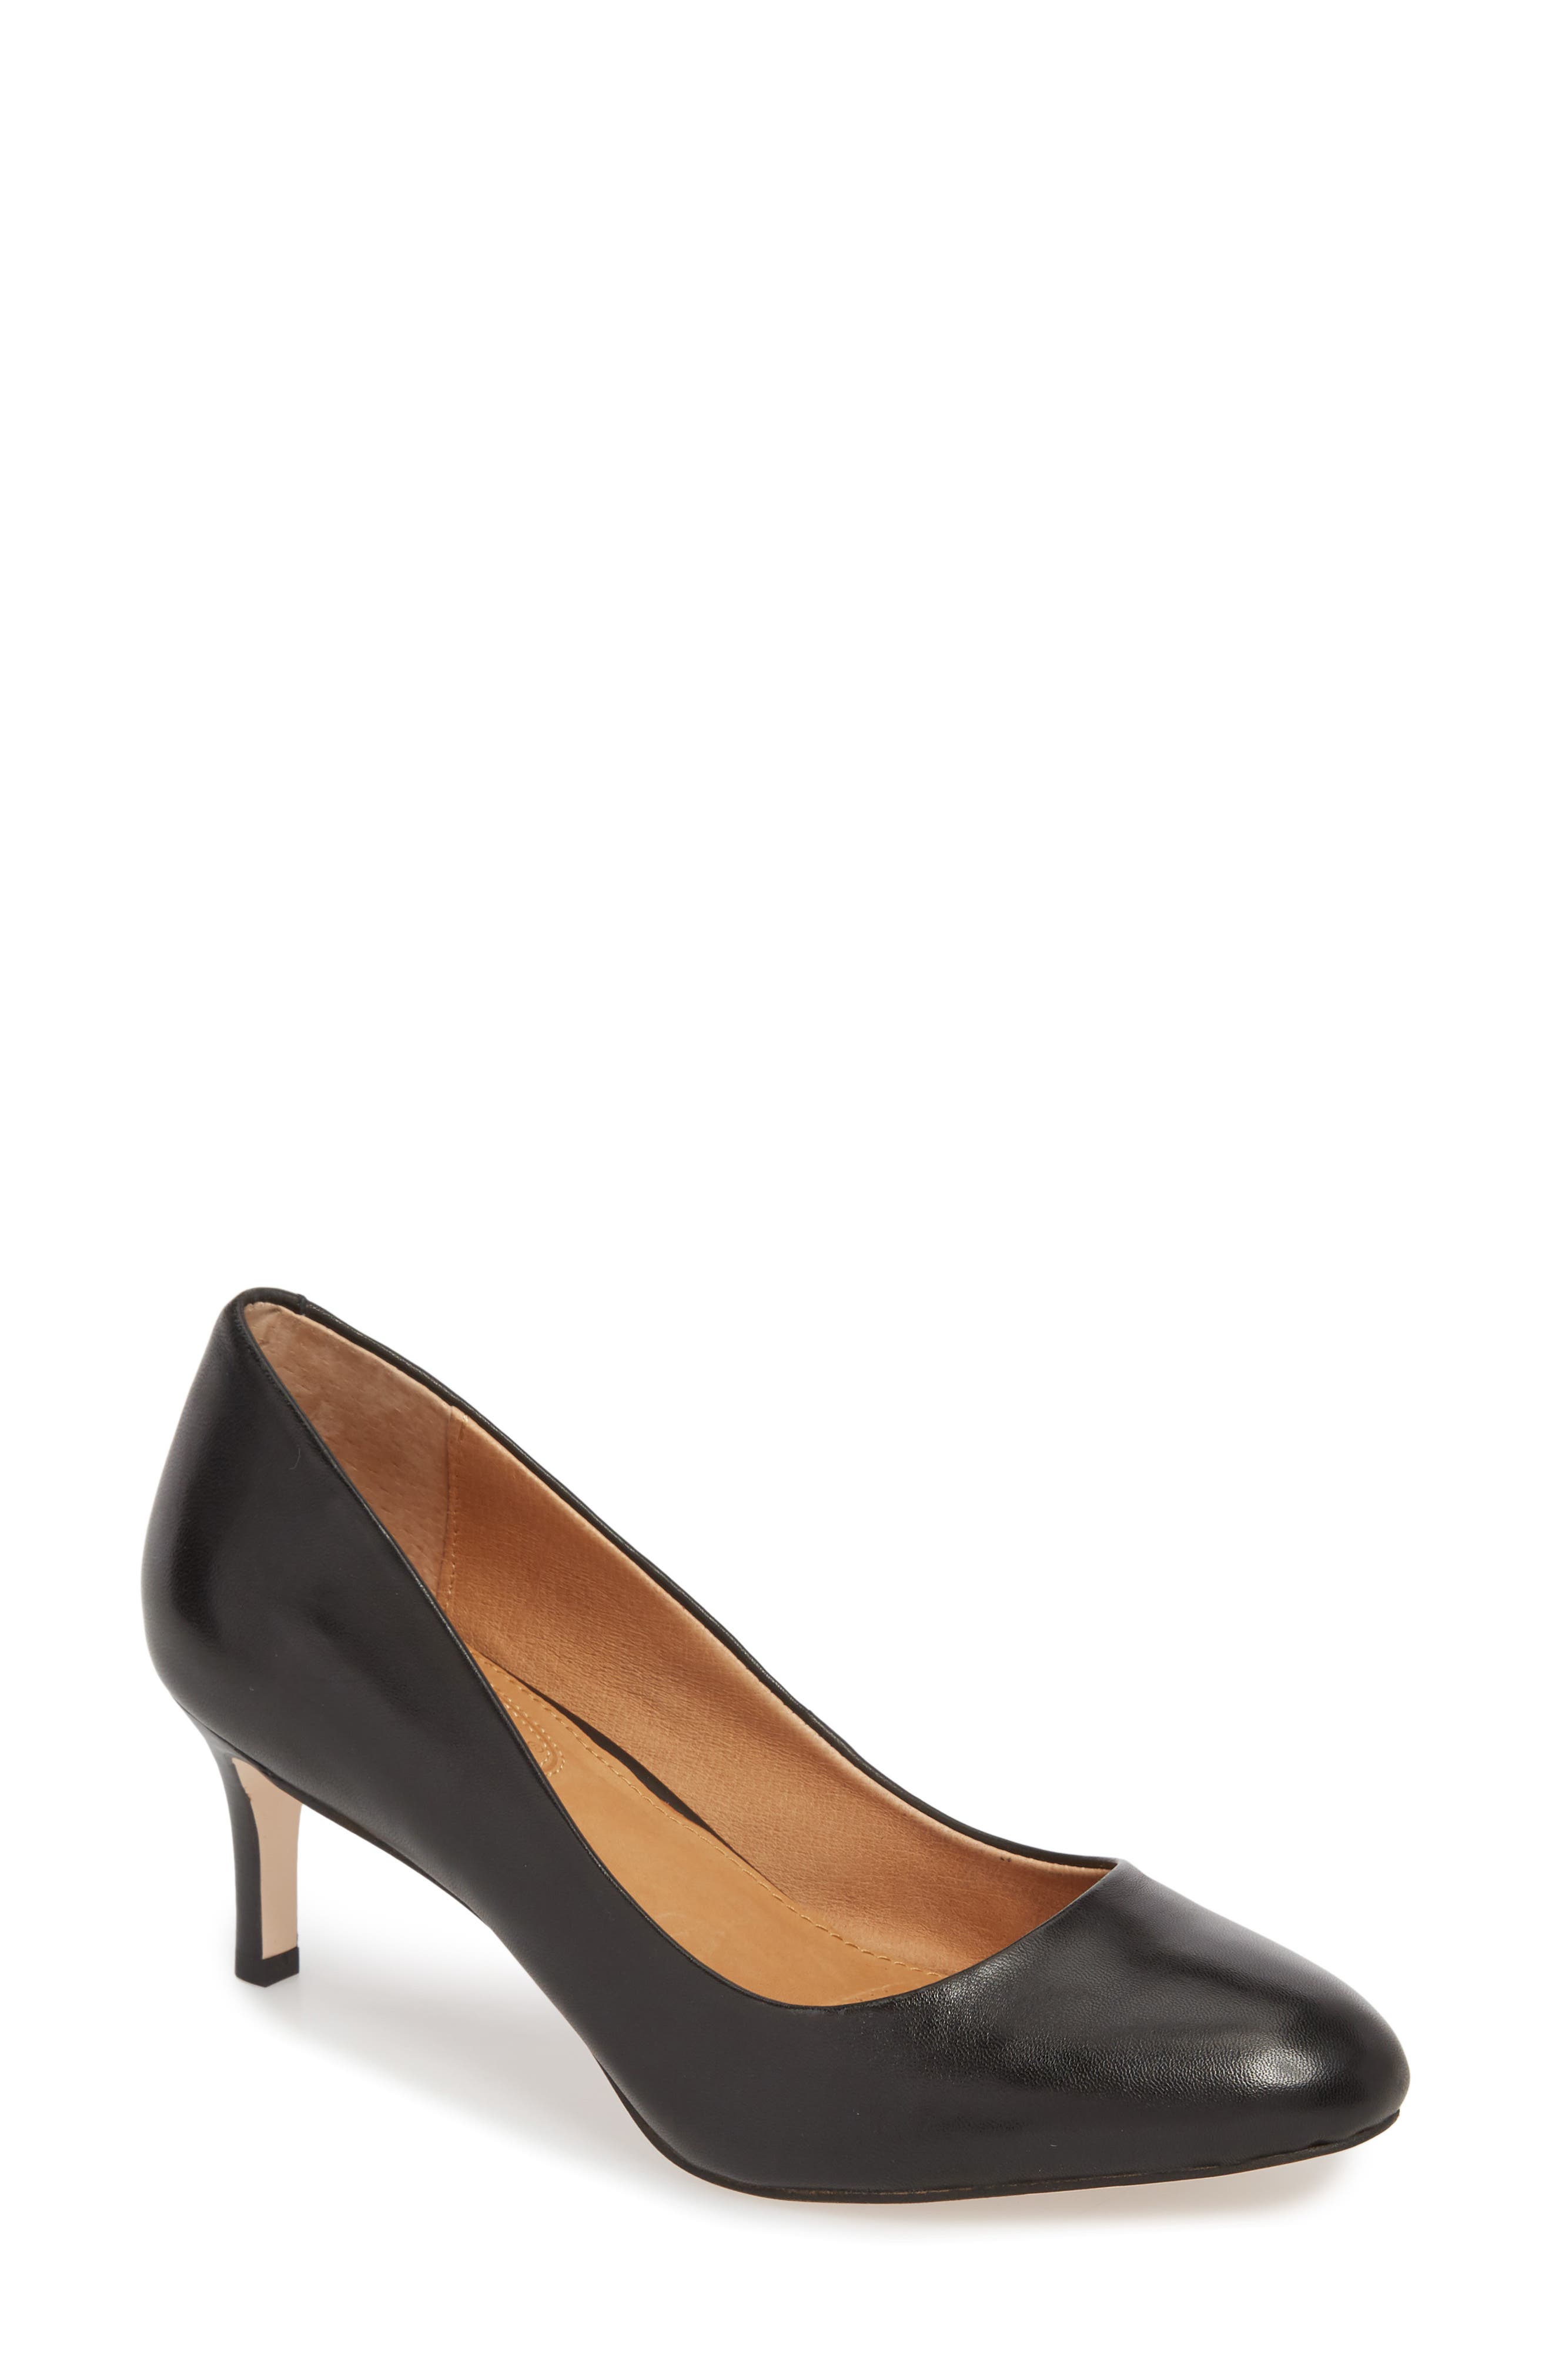 nordstrom black heels